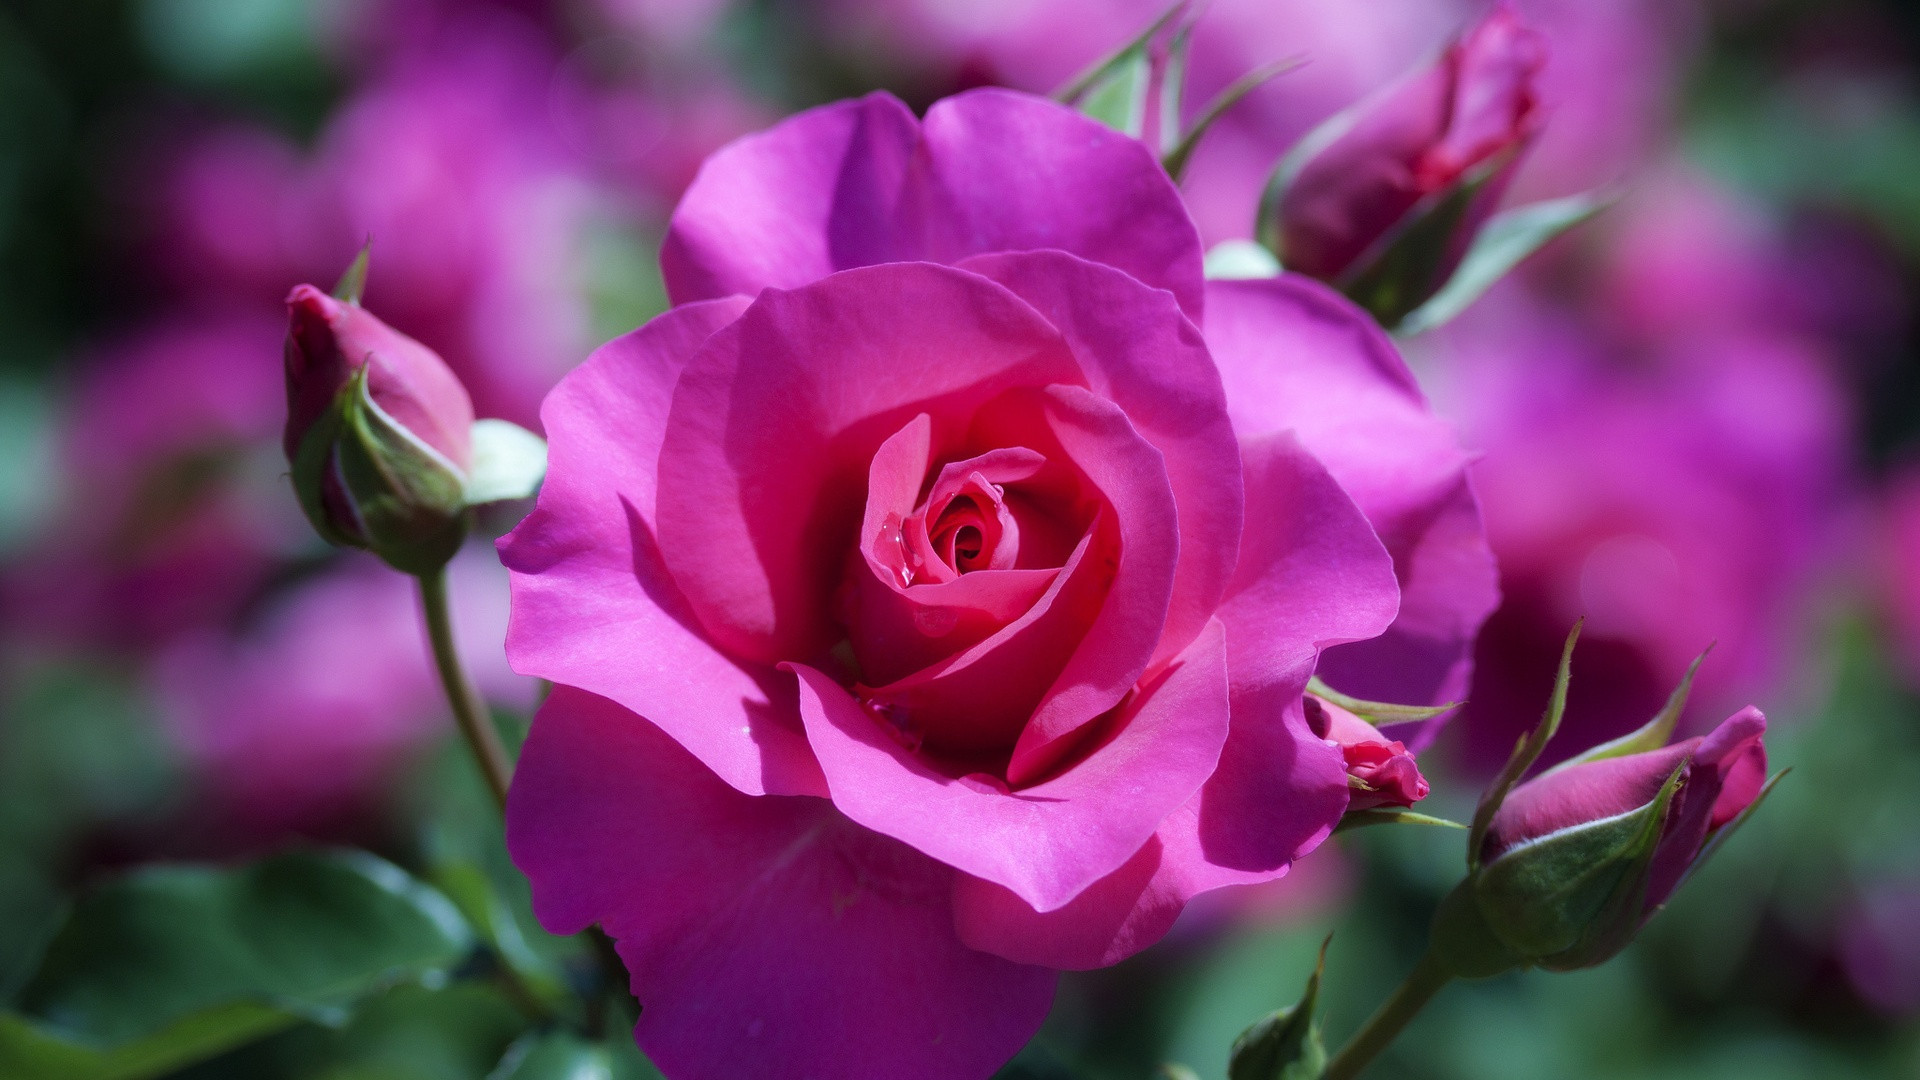 Free download Rose Flower Wallpaper HD [1920x1080] for your Desktop, Mobile  & Tablet | Explore 75+ Rose Flower Wallpaper Hd | Red Rose Flower  Background, Rose Flower Wallpapers, Rose Flower Wallpaper